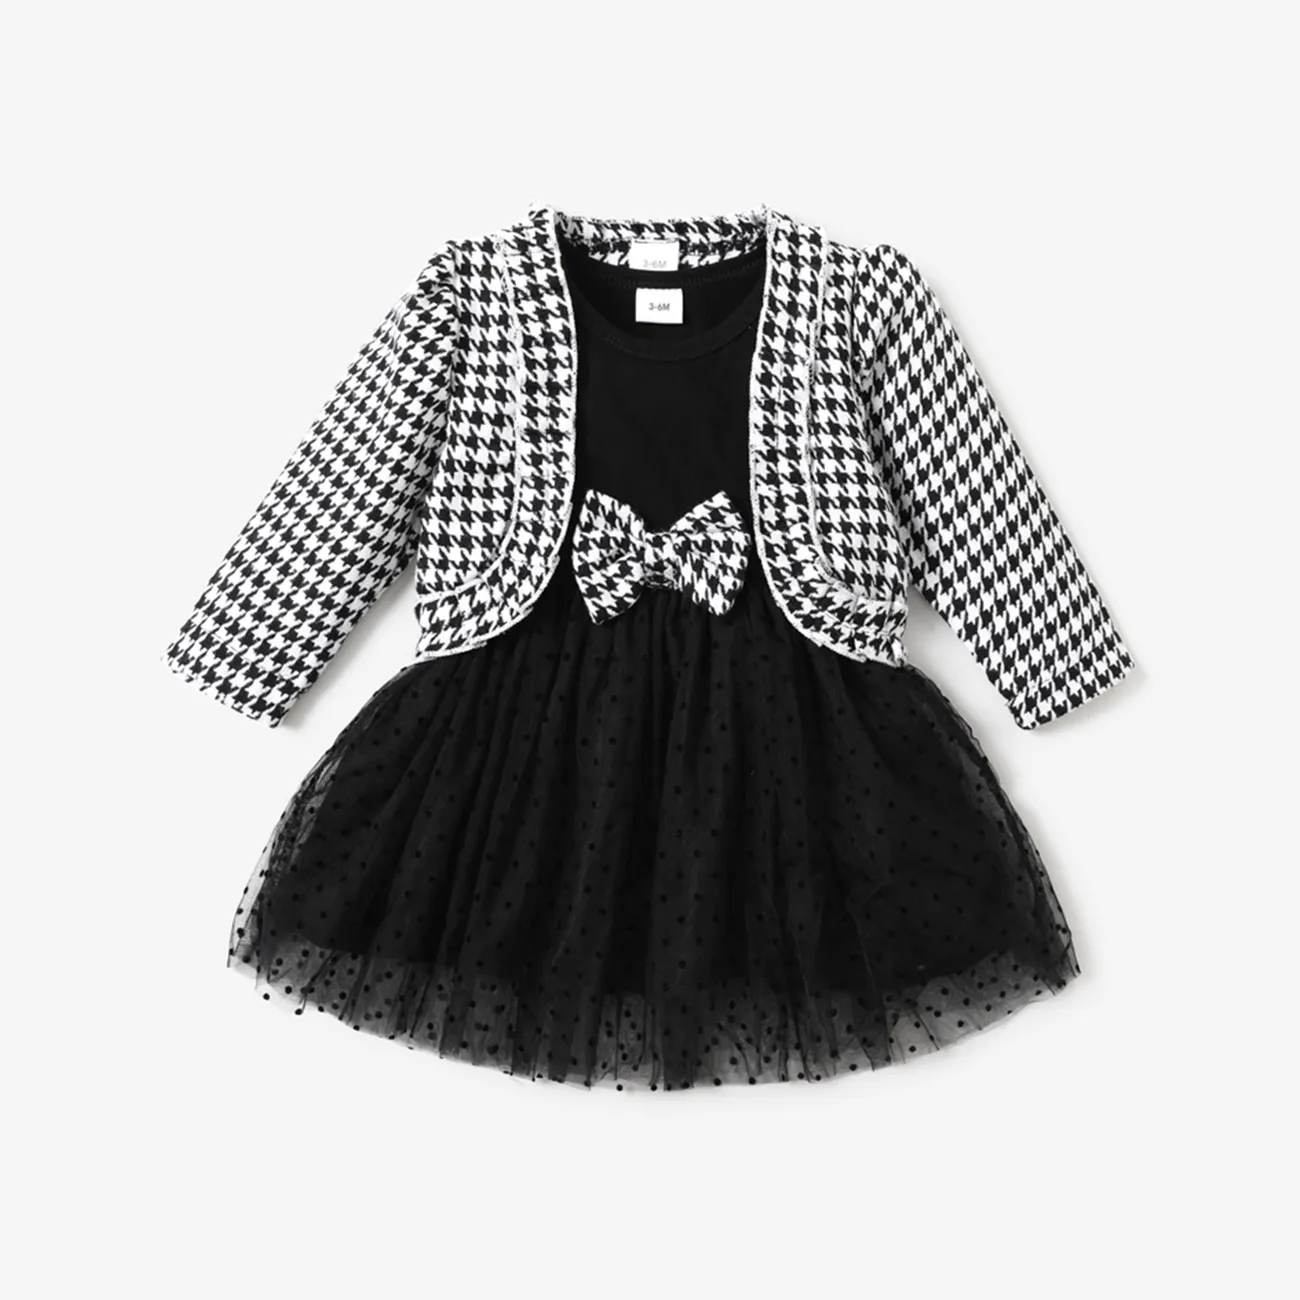 طقم فستان أطفال من قطعتين كارديجان منقوش بأكمام طويلة مع فستان شبكي توتو أسود / أبيض big image 1